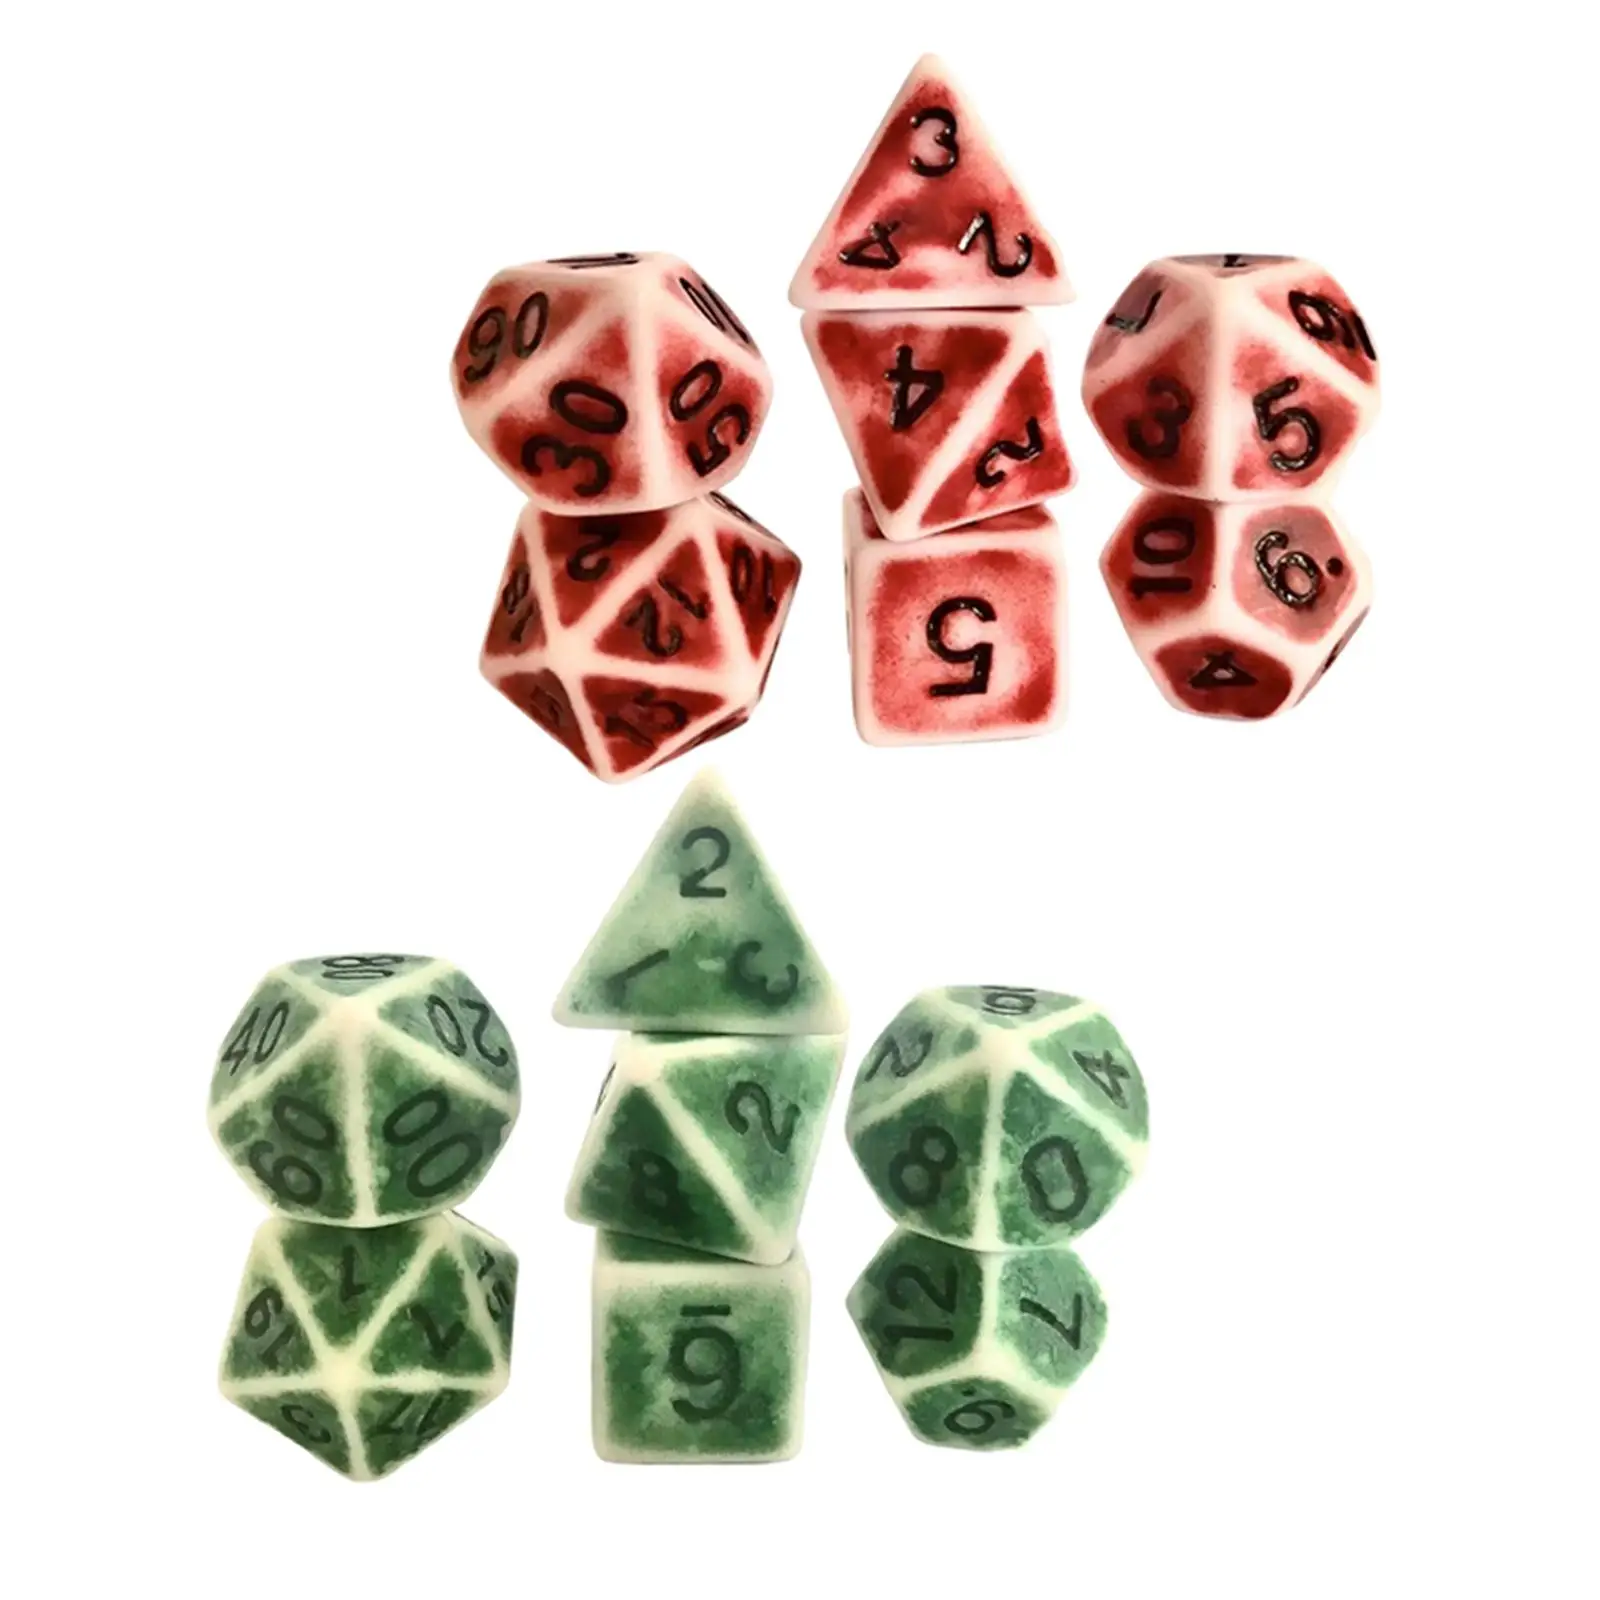 Set of 7 7-Die Polyhedral Dice Retro Color D4 D6 D8 D10 D10 D12 D20 for Table Games